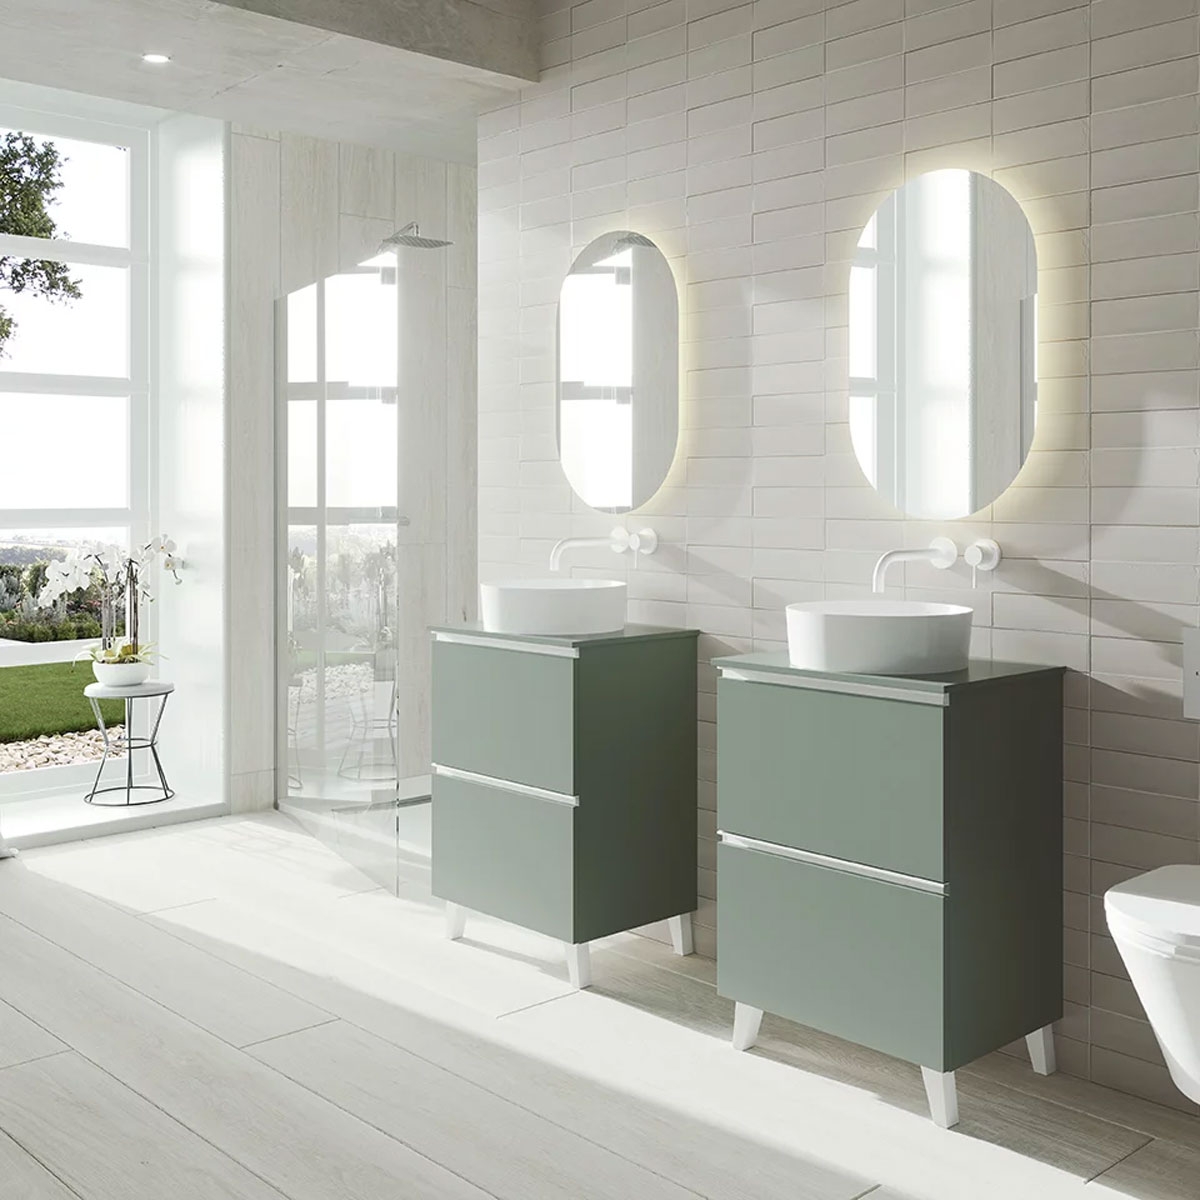 https://www.paratureforma.com/59305-product_default/mueble-de-bano-de-suelo-de-60-cm-con-lavabo-integrado-color-musgo-modelo-granada.jpg